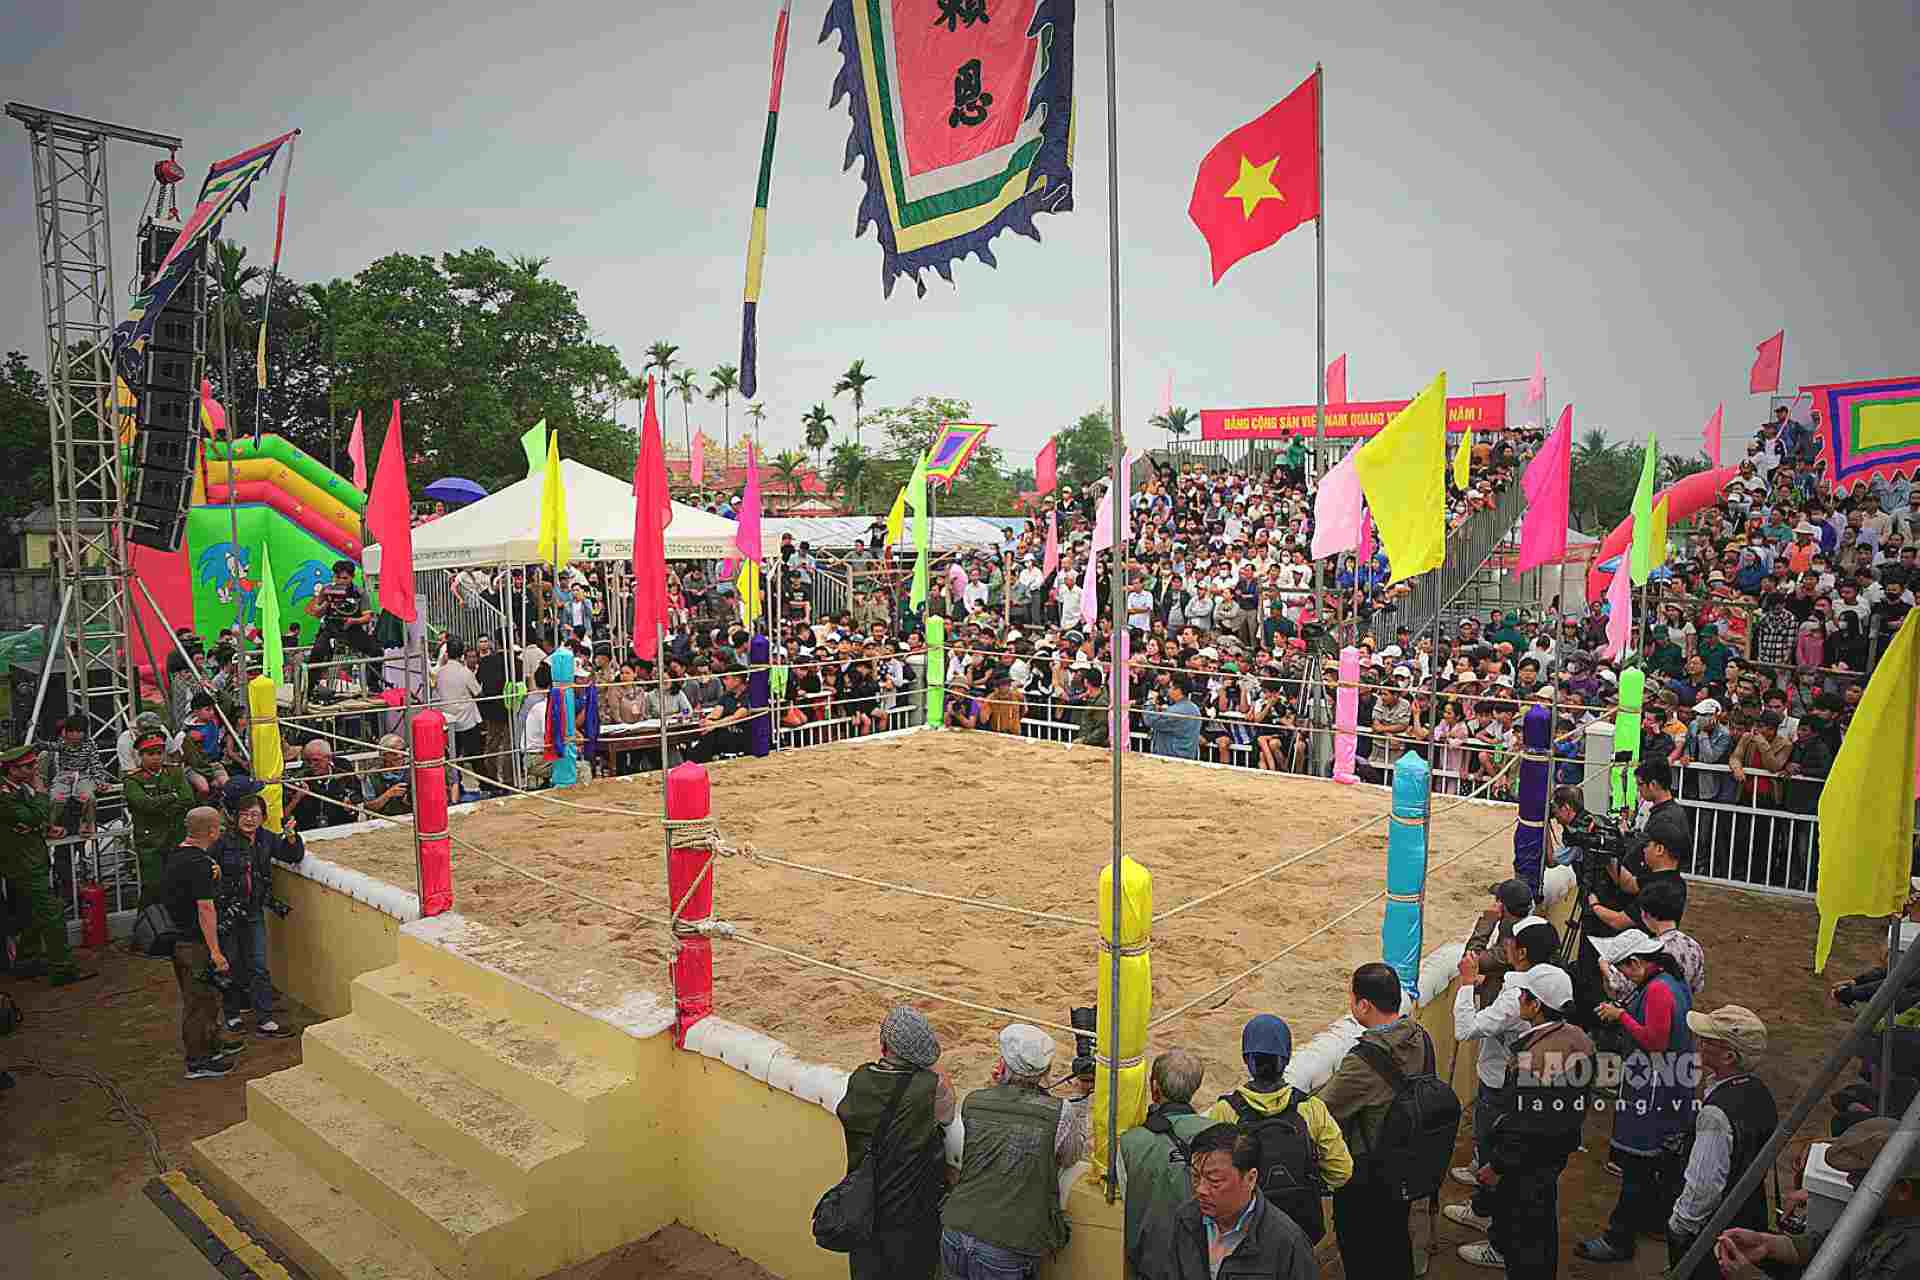 Cứ vào ngày mùng 10 tháng Giêng hằng năm, người dân xã Phú Mậu lại giong trống mở cờ, tổ chức Hội Vật làng Sình truyền thống, món ăn tinh thần của người dân nơi đây.  